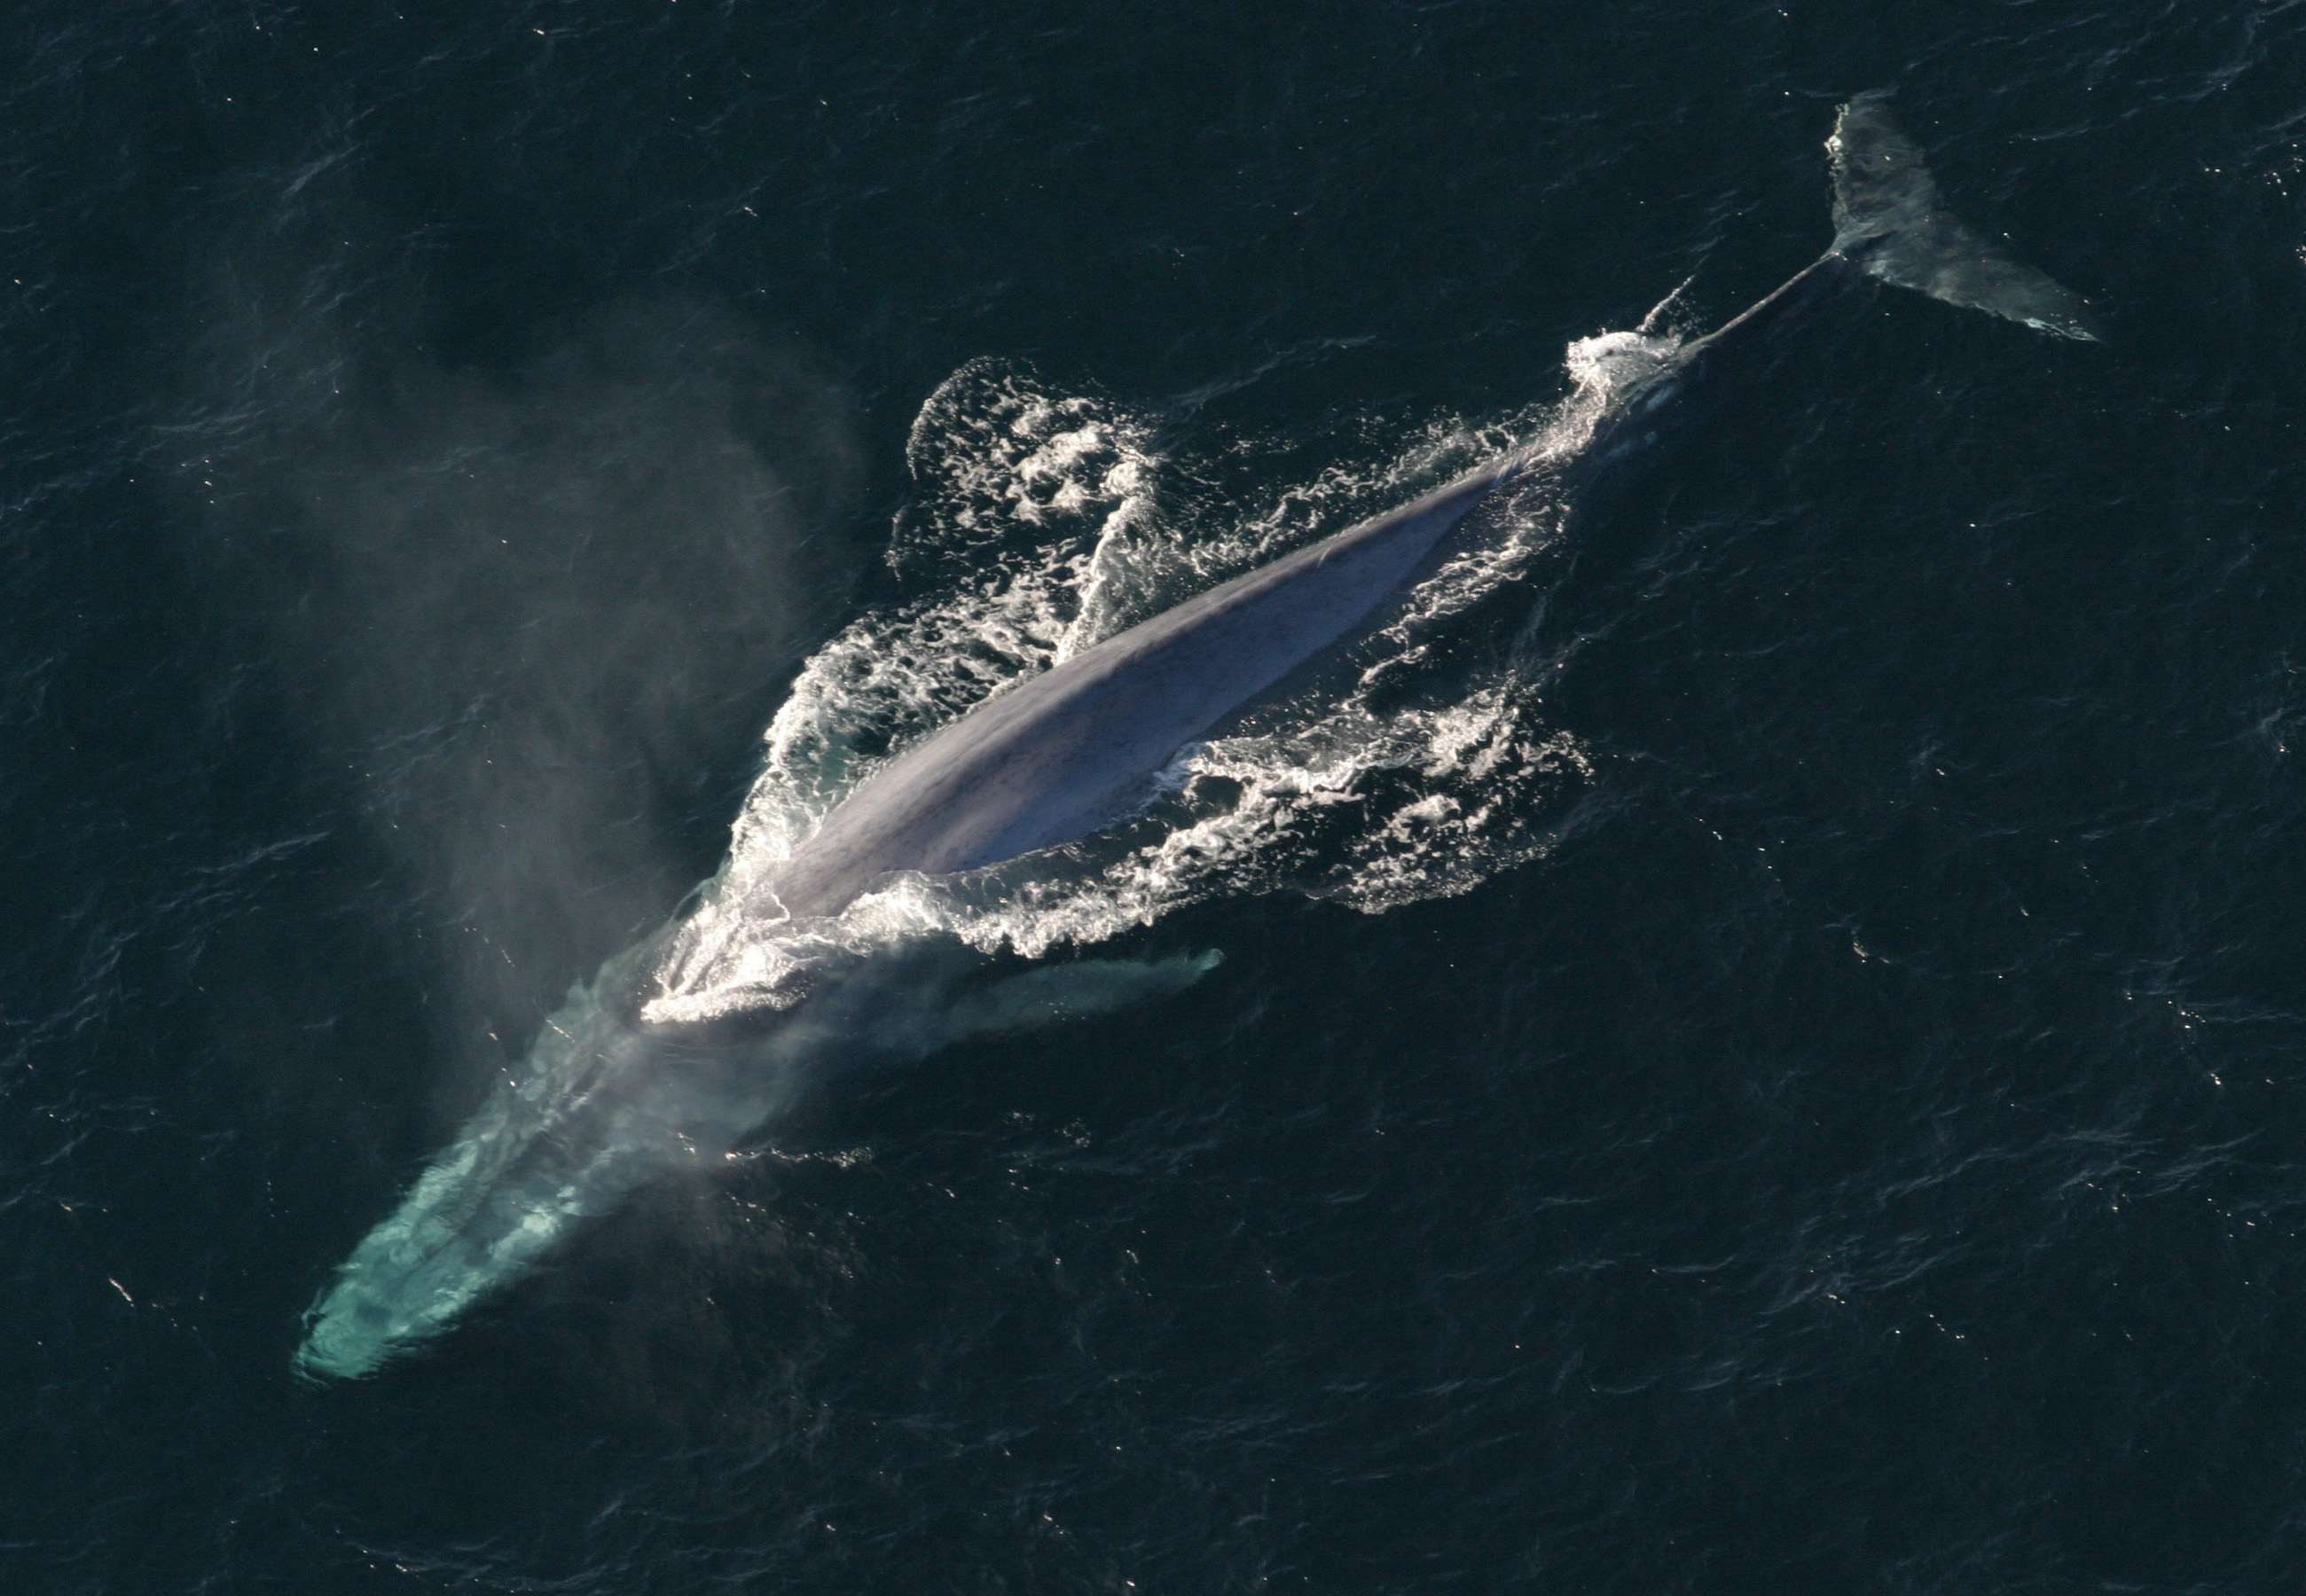 Aby vědci zjistili kolik toho velryby zkonzumují, označili si a sledovali 321 kytovců sedmi druhů. Data byla shromážděna v průběhu let 2010 až 2019. Každá z velryb měla na hřbetě sondu vybavenou kamerou, mikrofonem, GPS a akcelerometrem. Na snímku je